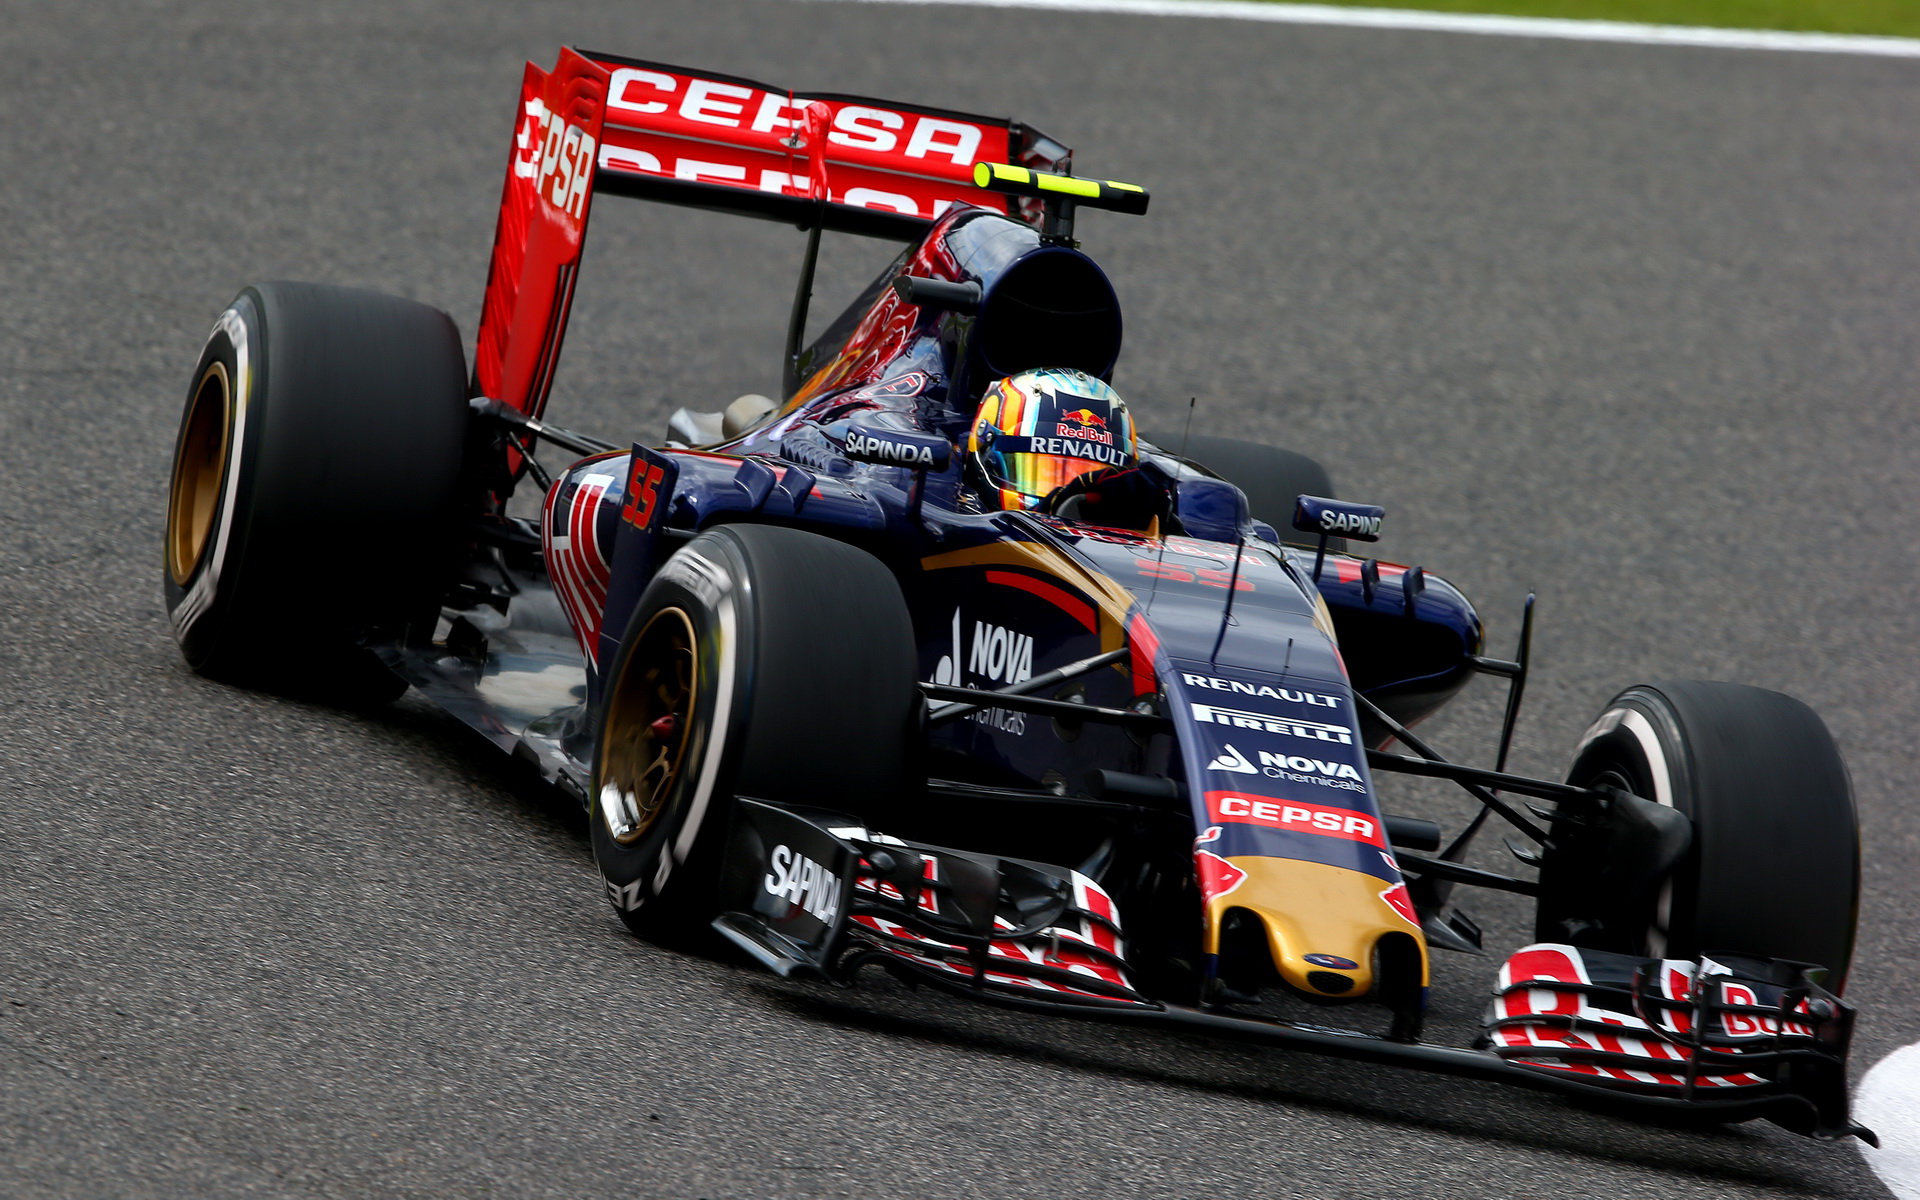 Carlos Sainz, GP Japonska (Suzuka)